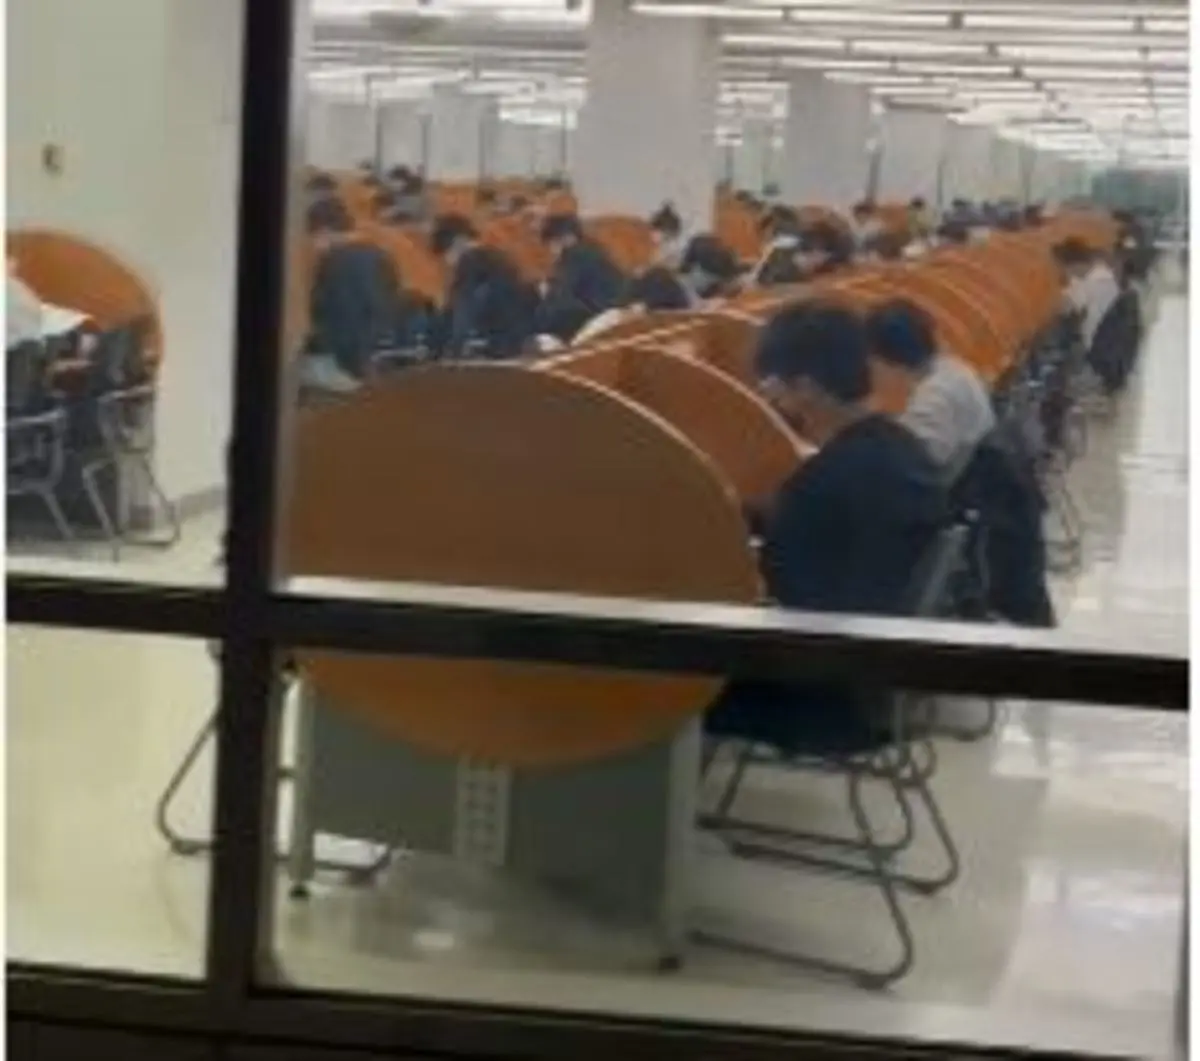 وضعیت کتابخانه دانشگاهی در روز تعطیل + ویدیو